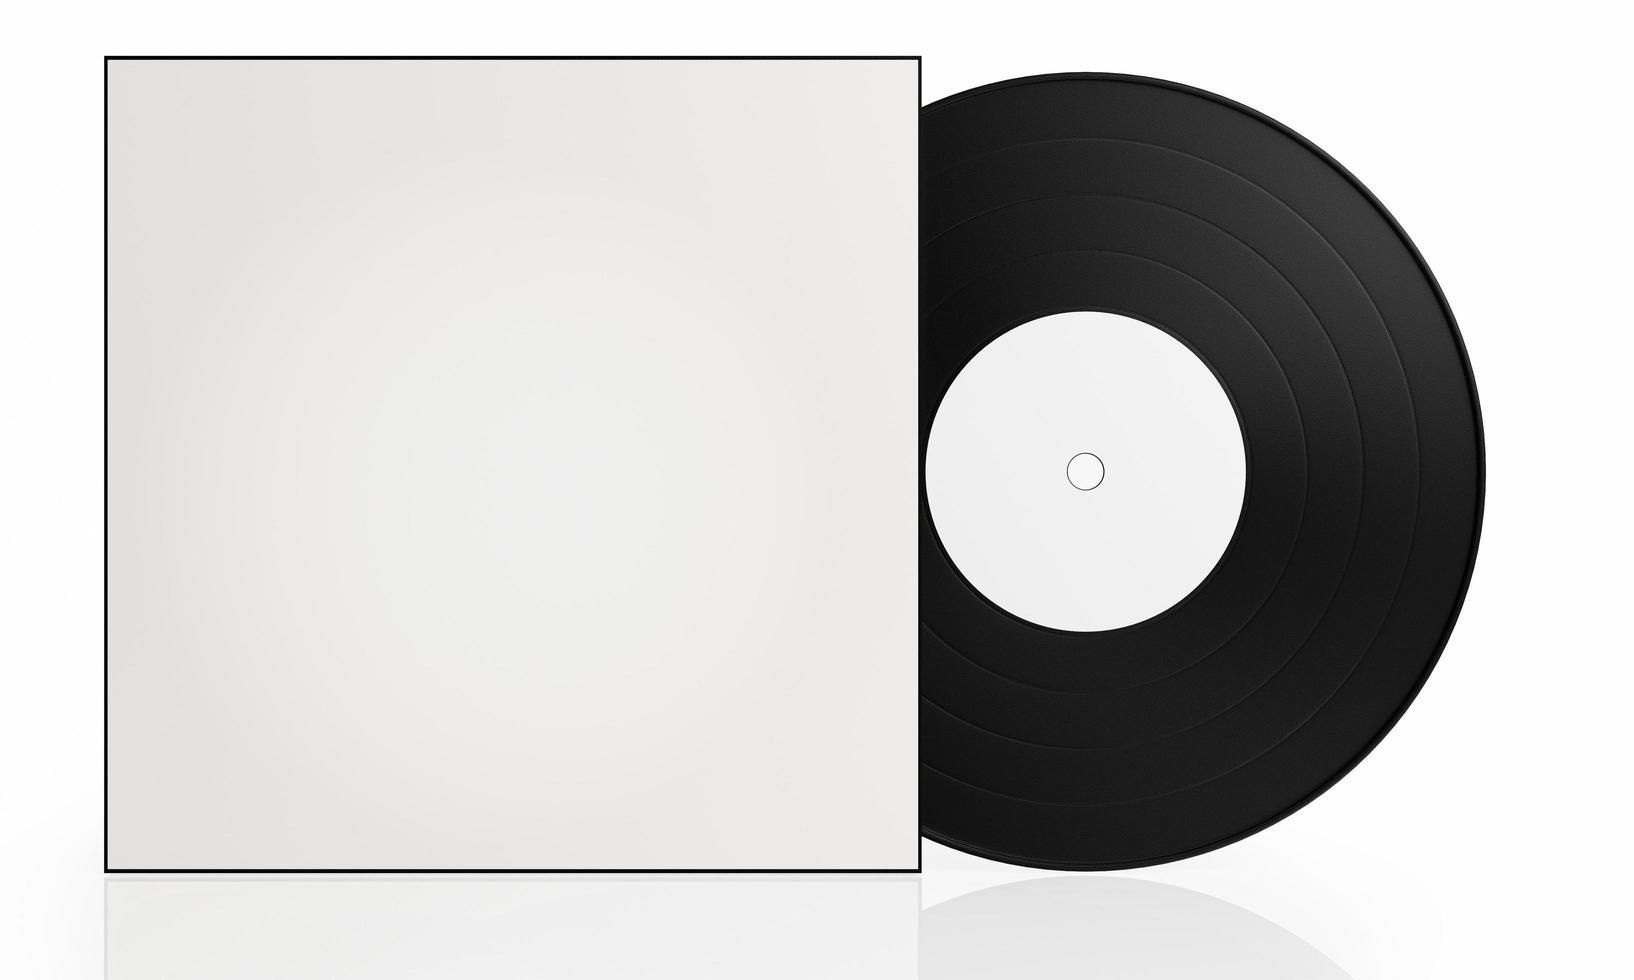 disque vinyle noir couverture blanche vierge sur fond blanc il y a une réflexion sur le sol. un appareil pour jouer de la musique dans les temps anciens. rendu 3d photo